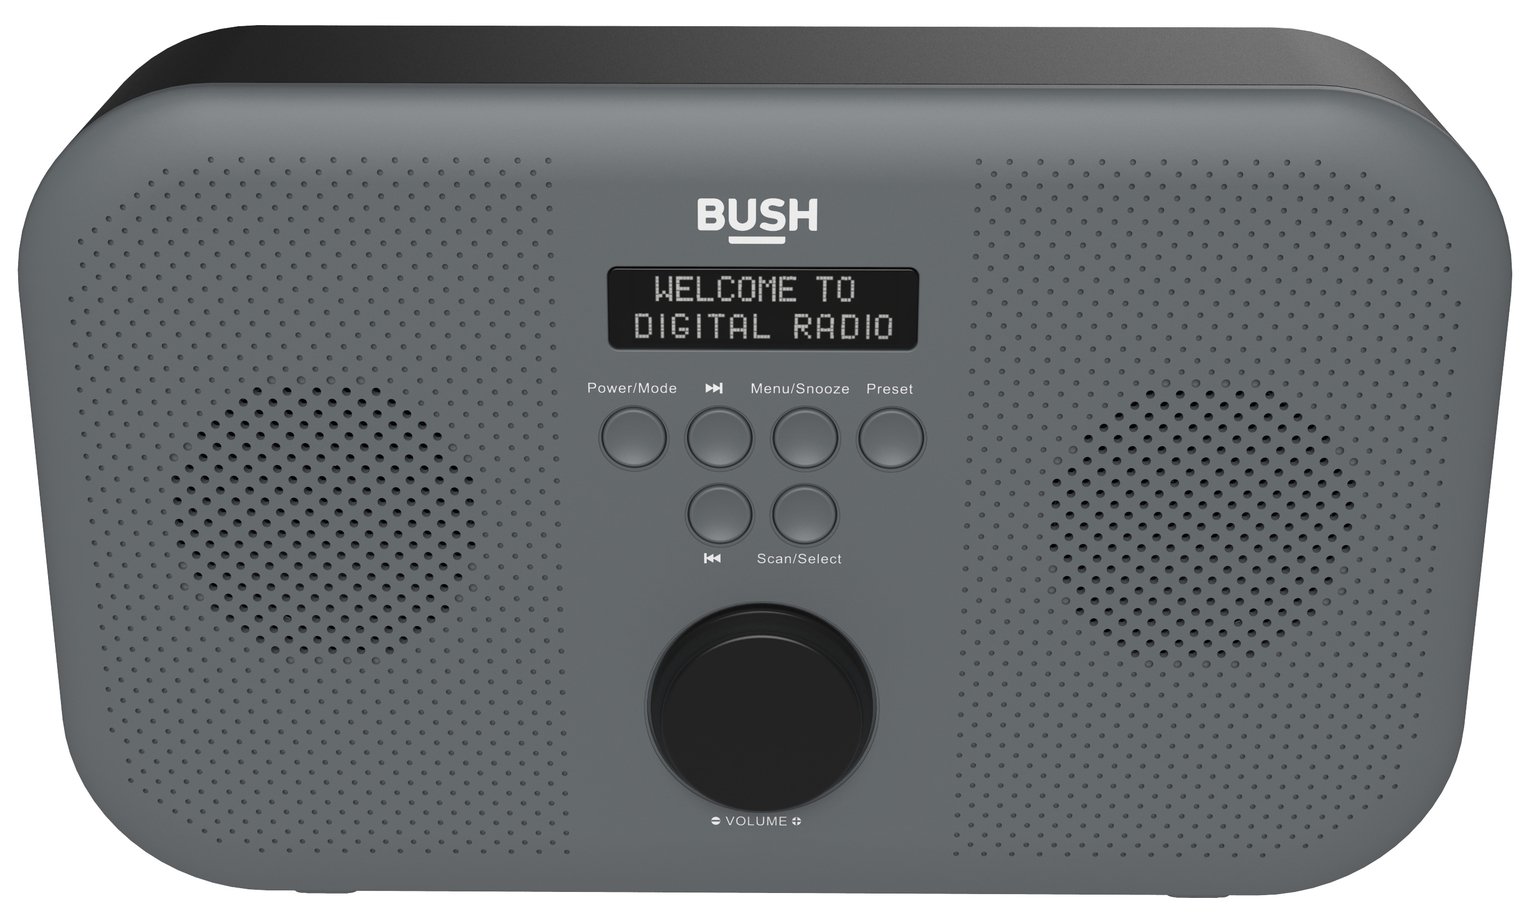 Bush Portable Stereo DAB Radio Review